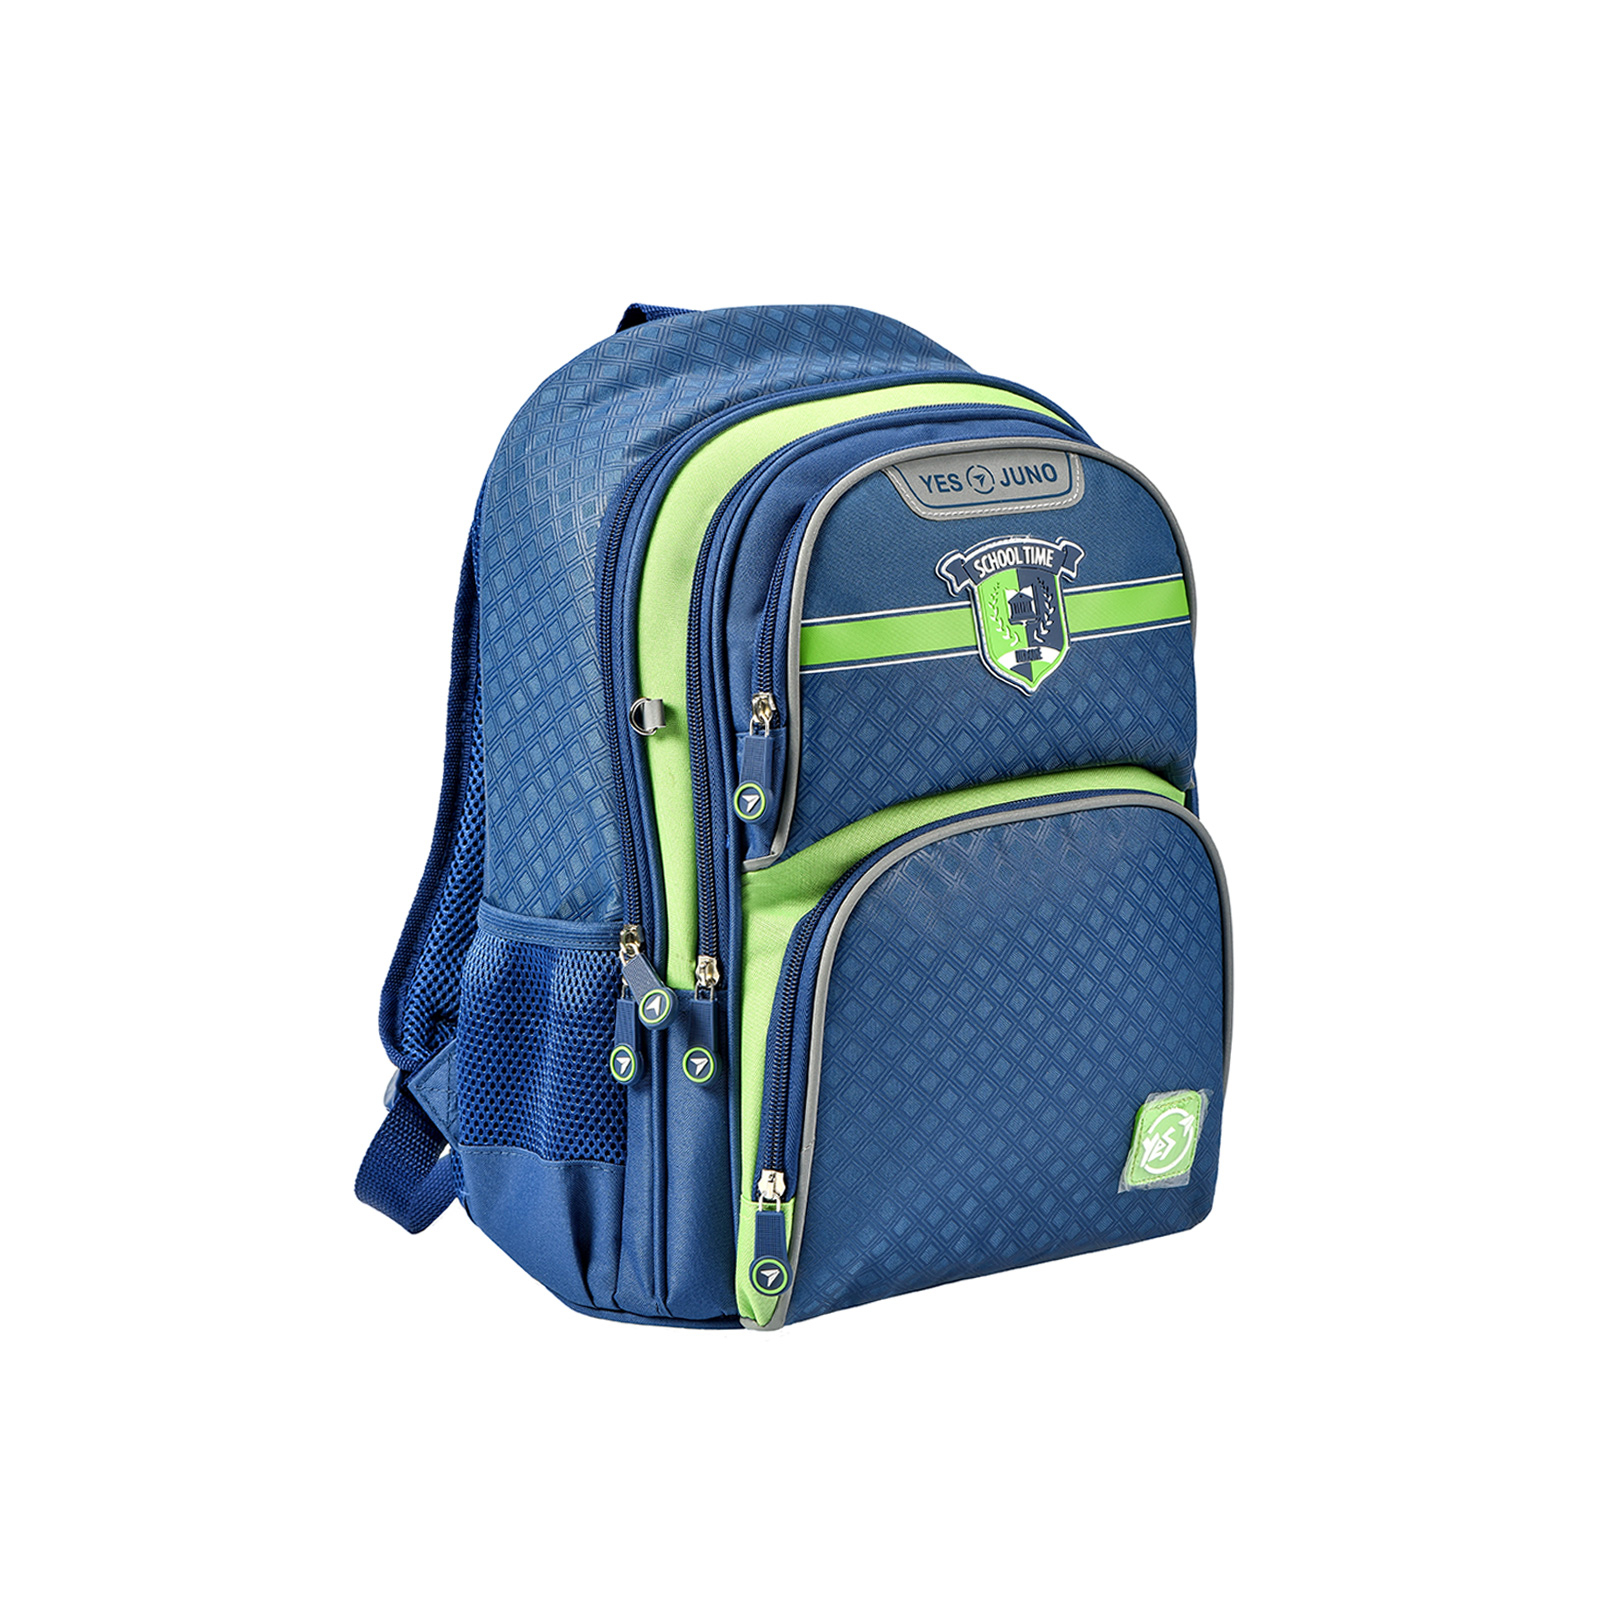 Рюкзак шкільний Yes S-30 Juno School time синій/зелений (558011)